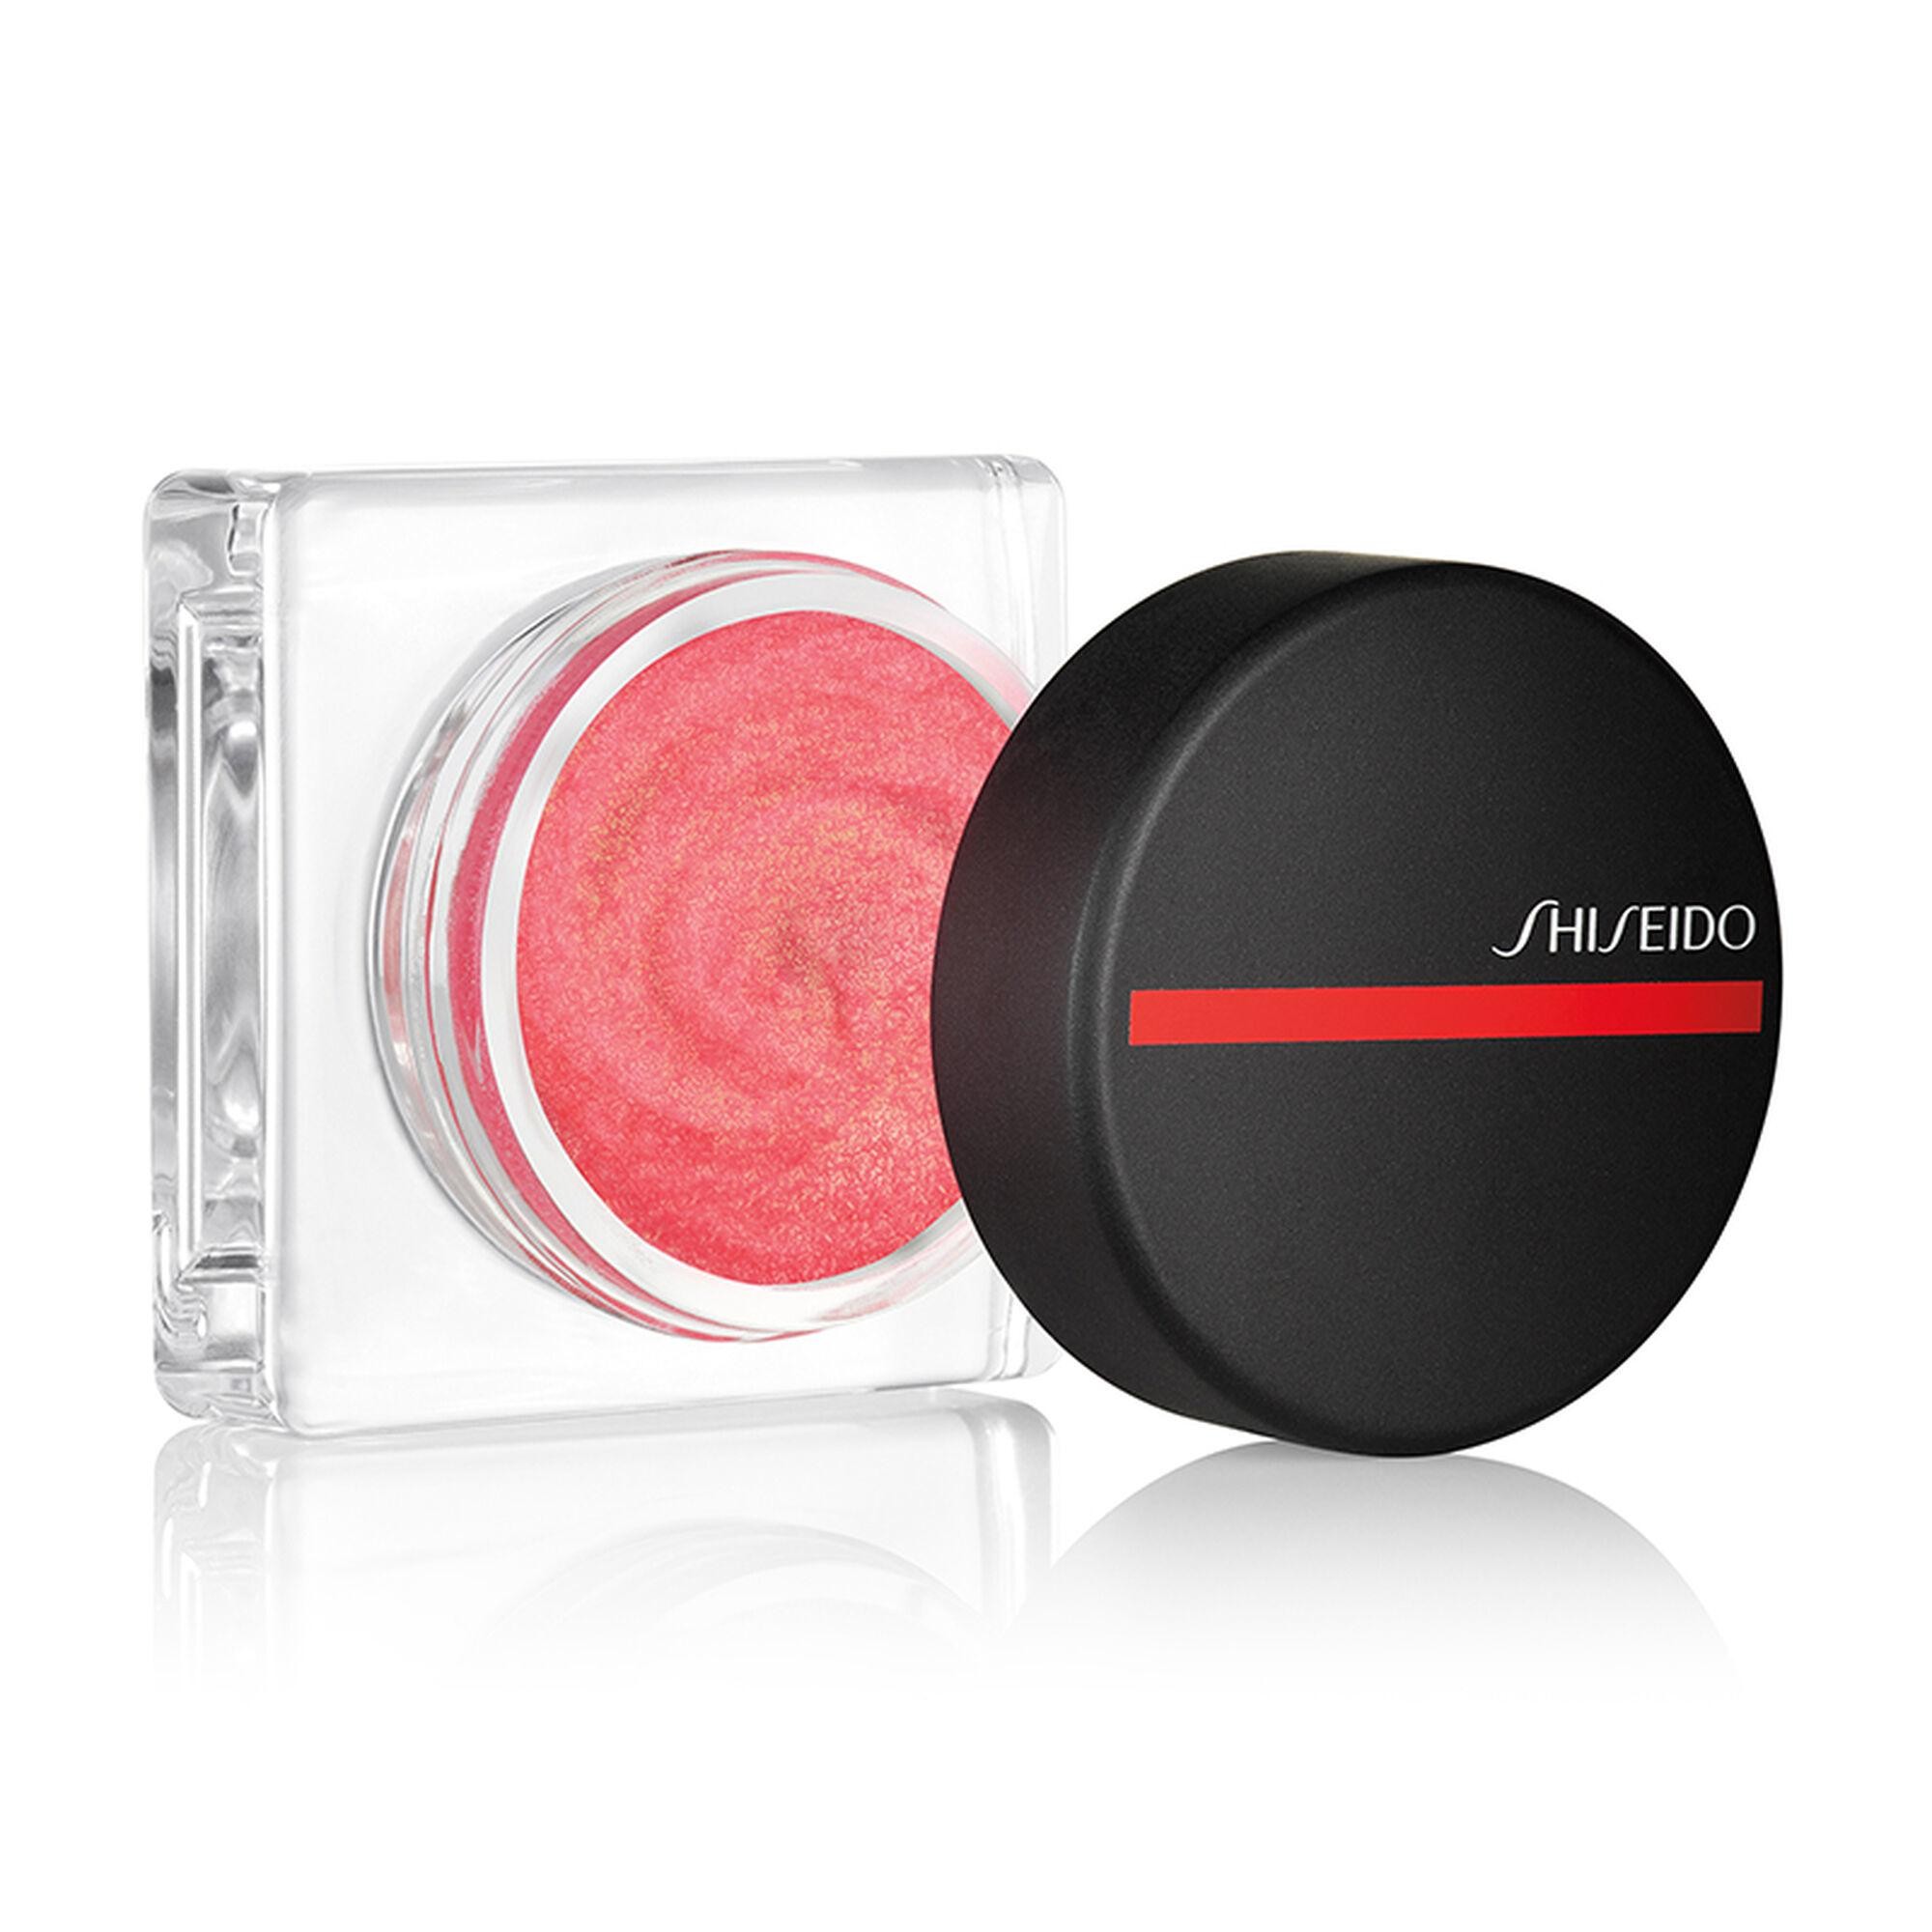 Shiseido Minimalist Whipped Powder Blush 01 Sonoya 5g